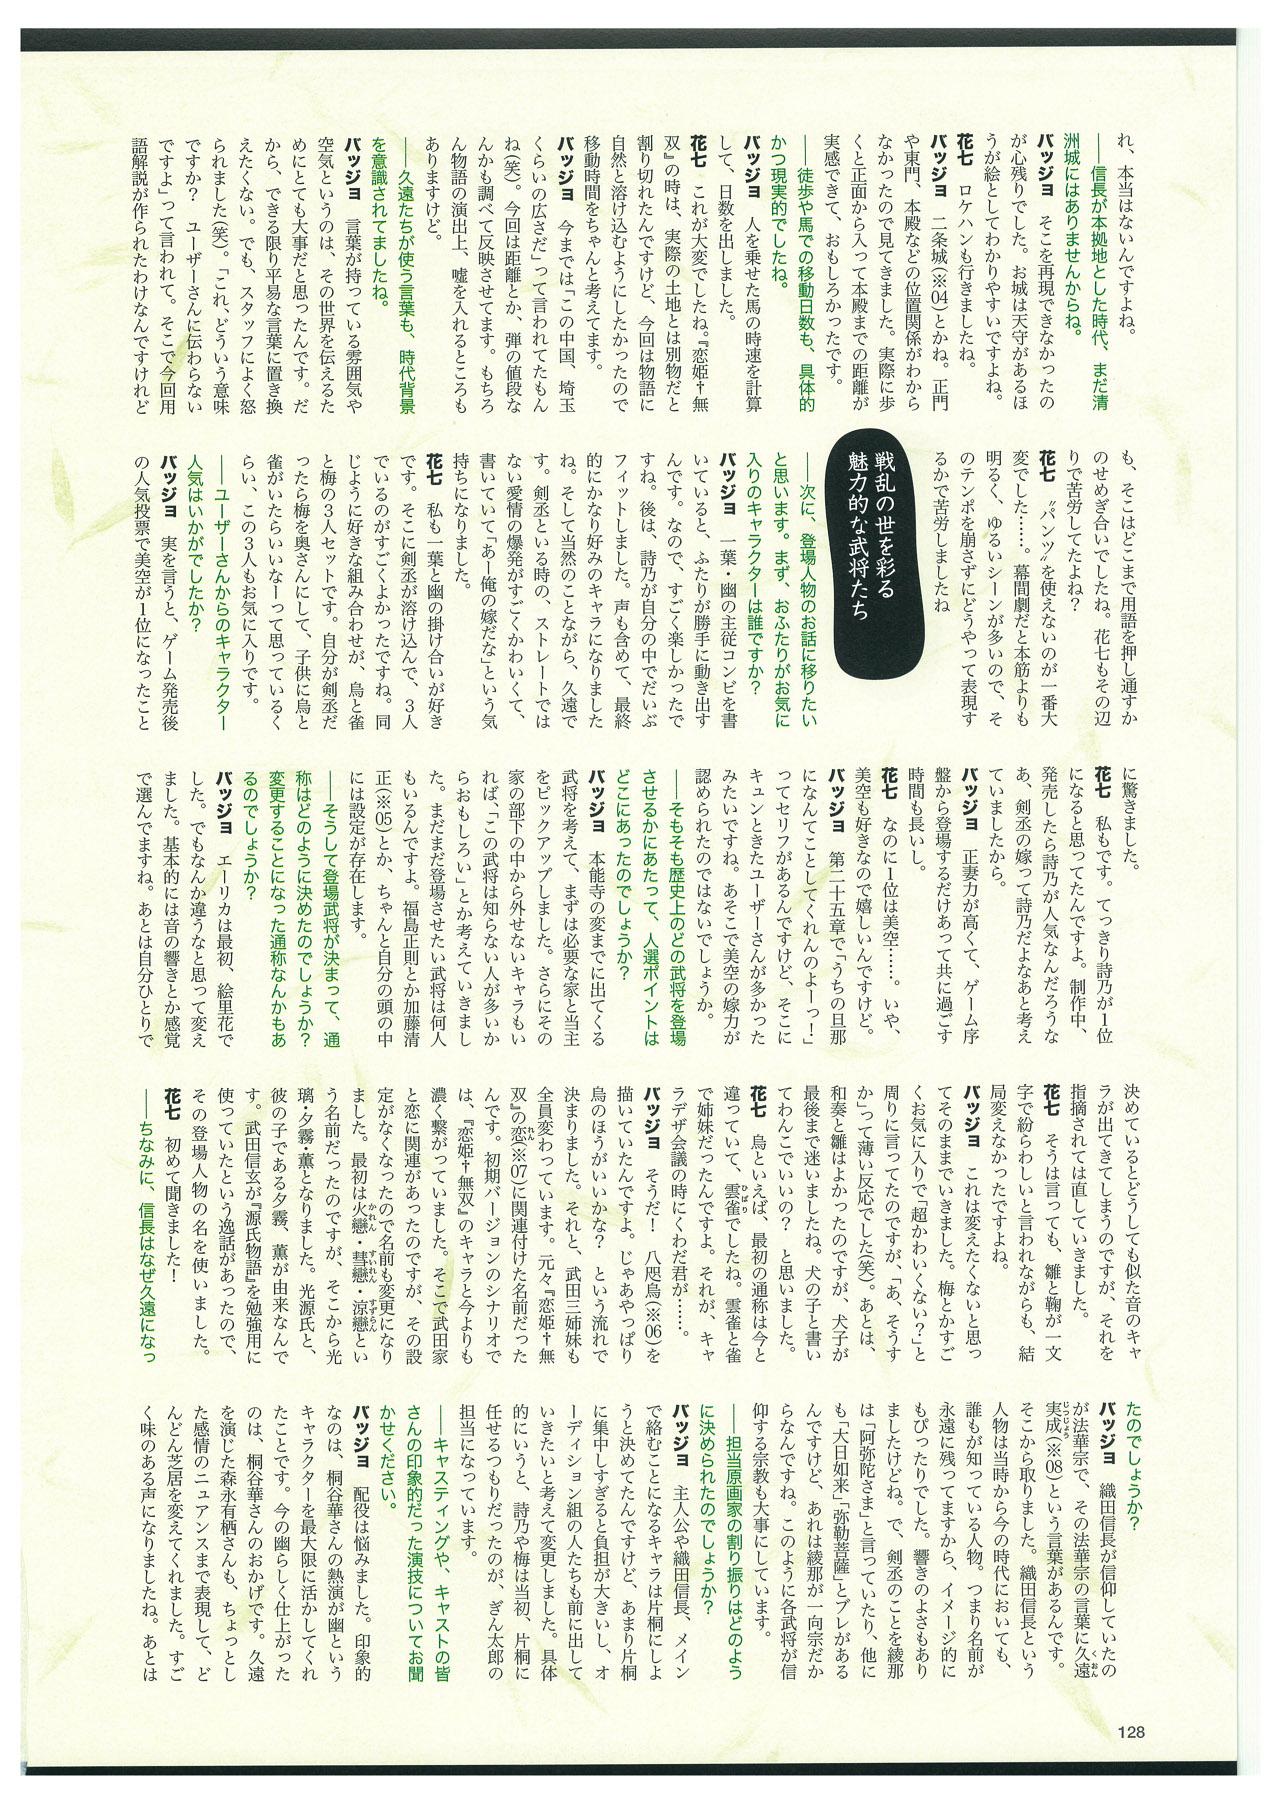 戦国†恋姫 ～乙女絢爛☆戦国絵巻～ ビジュアルファンブック-2 130